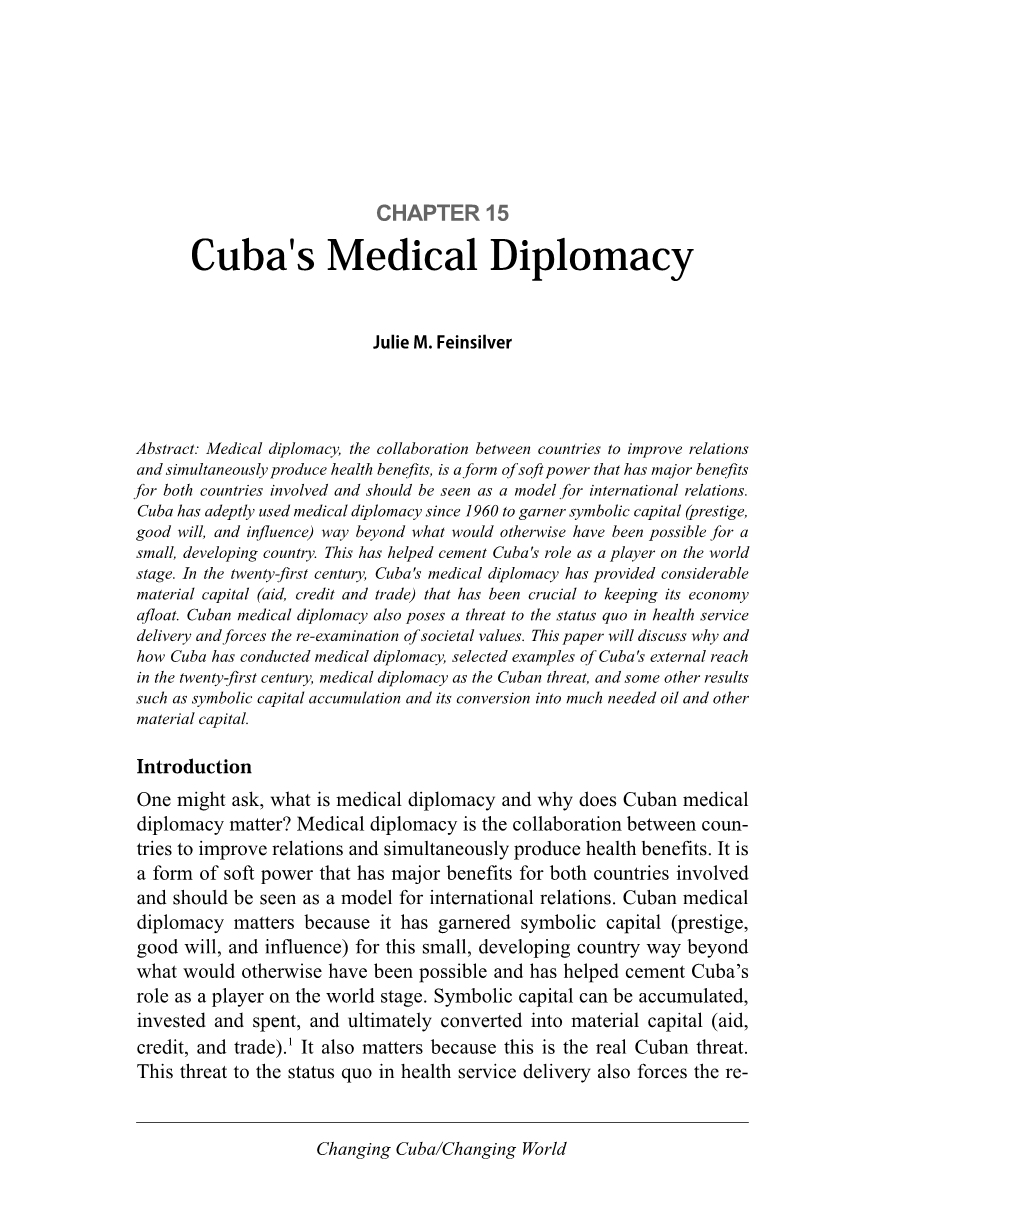 Cuba's Medical Diplomacy